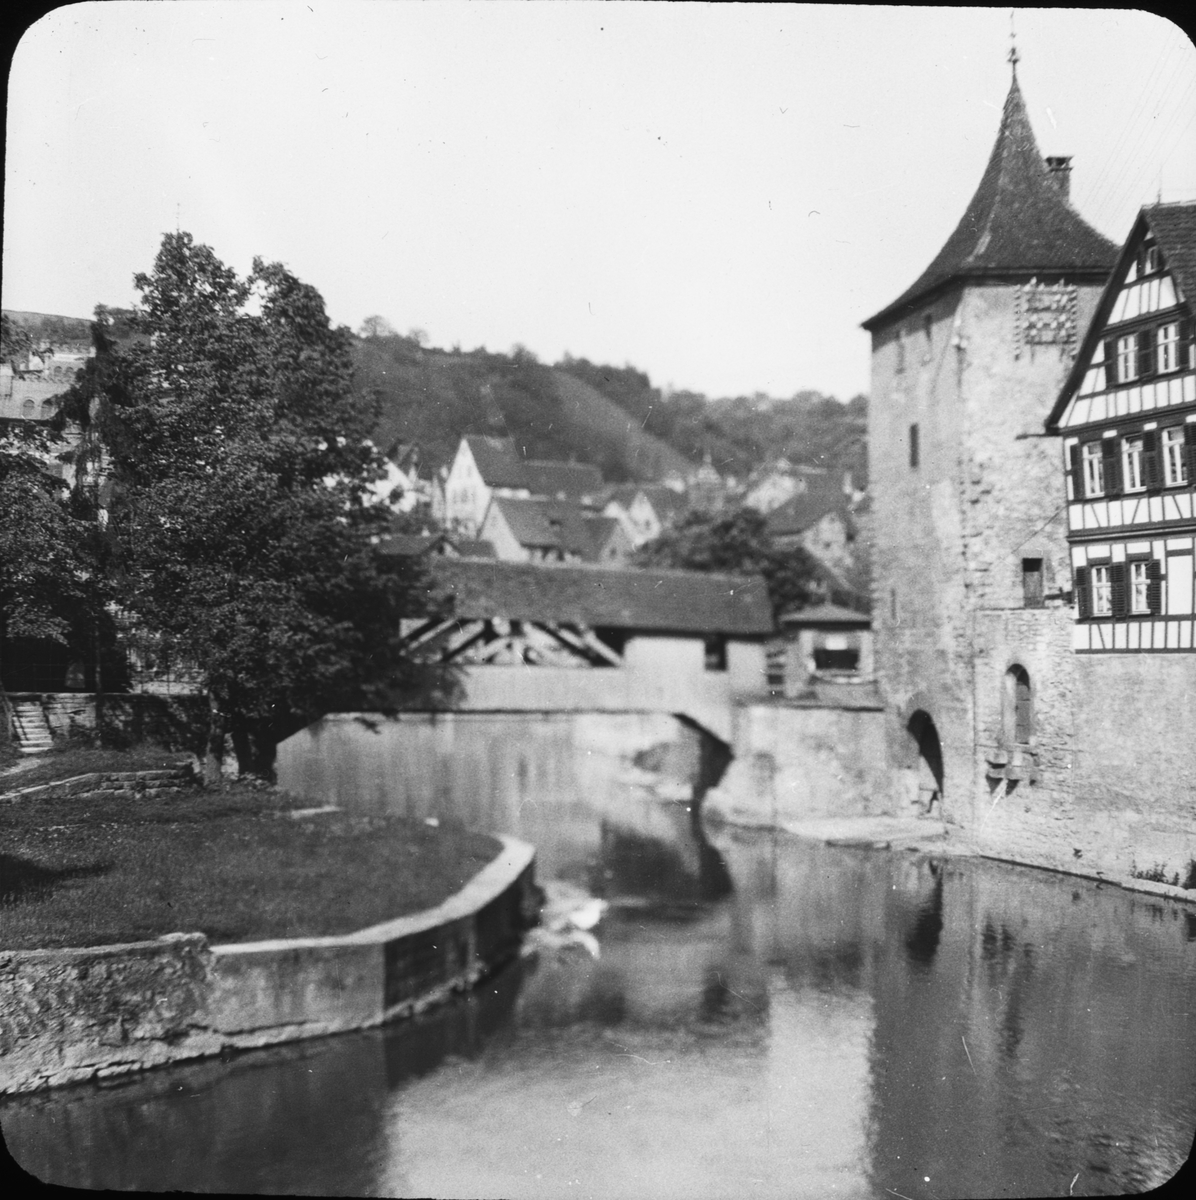 Skioptikonbild med motiv från Schwäbisch Hall. Bron Roter Steg över floden Kocher.
Bilden har förvarats i kartong märkt: Resan 1911 Schwäbische Hall. Schloss Kronburg. XX.